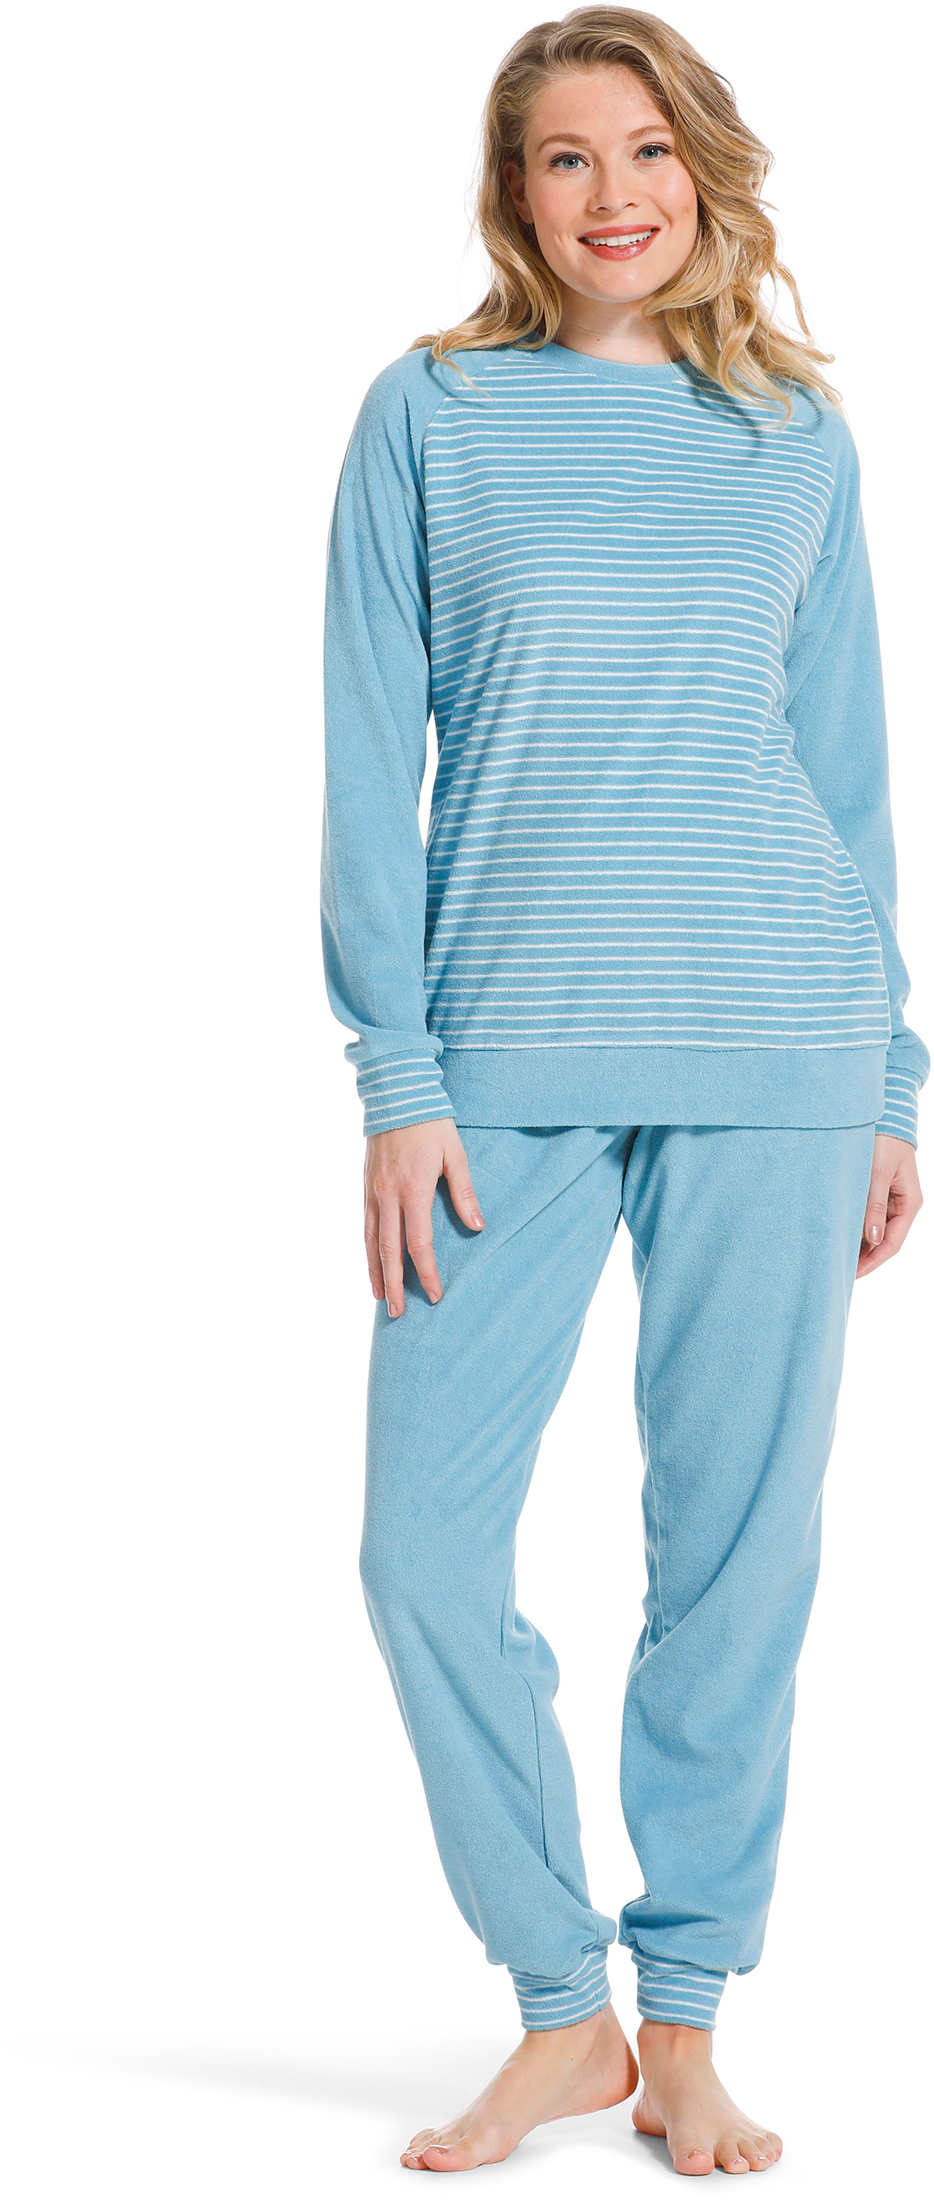 Pastunette badstof dames pyjama 20222-144-2 - Blauw - 42